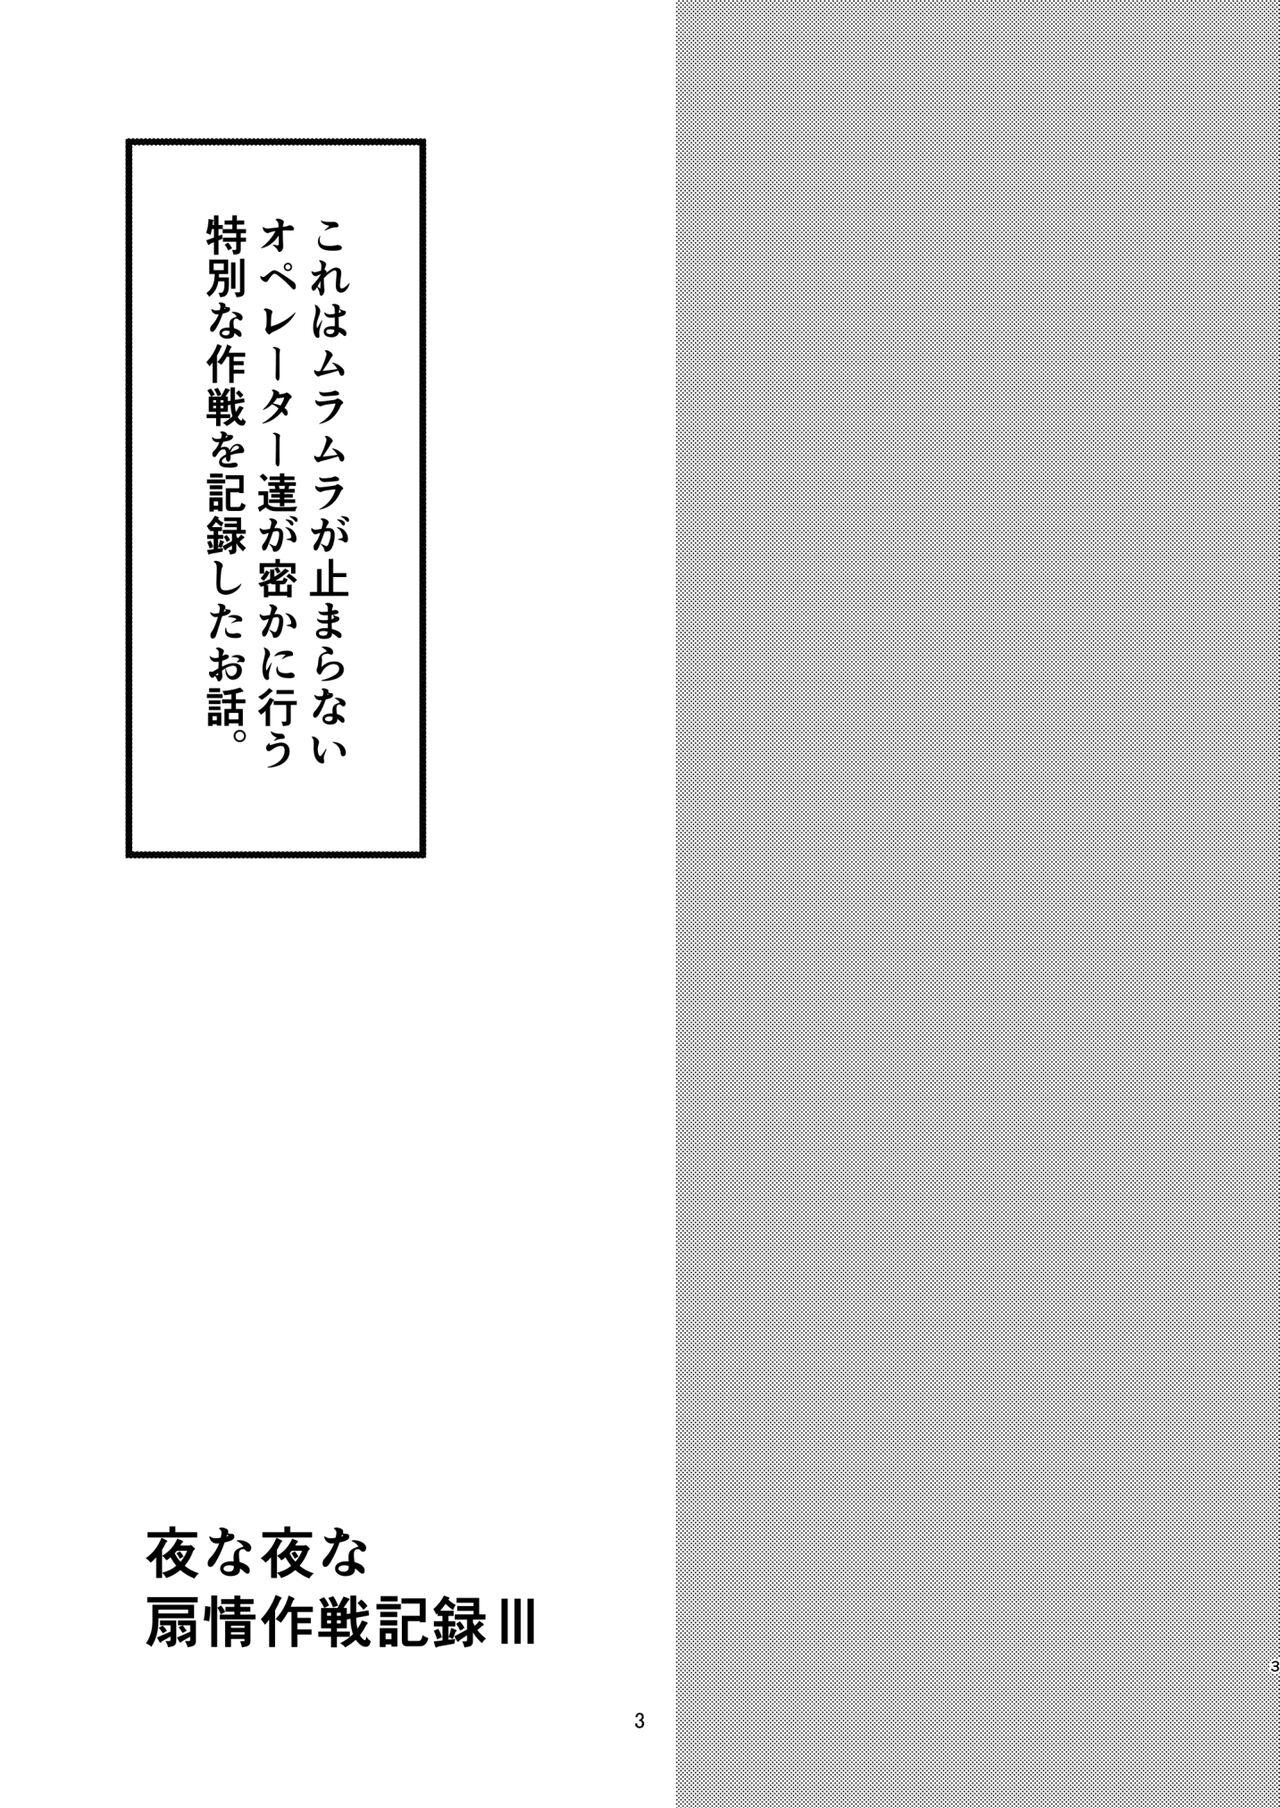 Yona Yona Senjou Sakusen Kiroku III 2